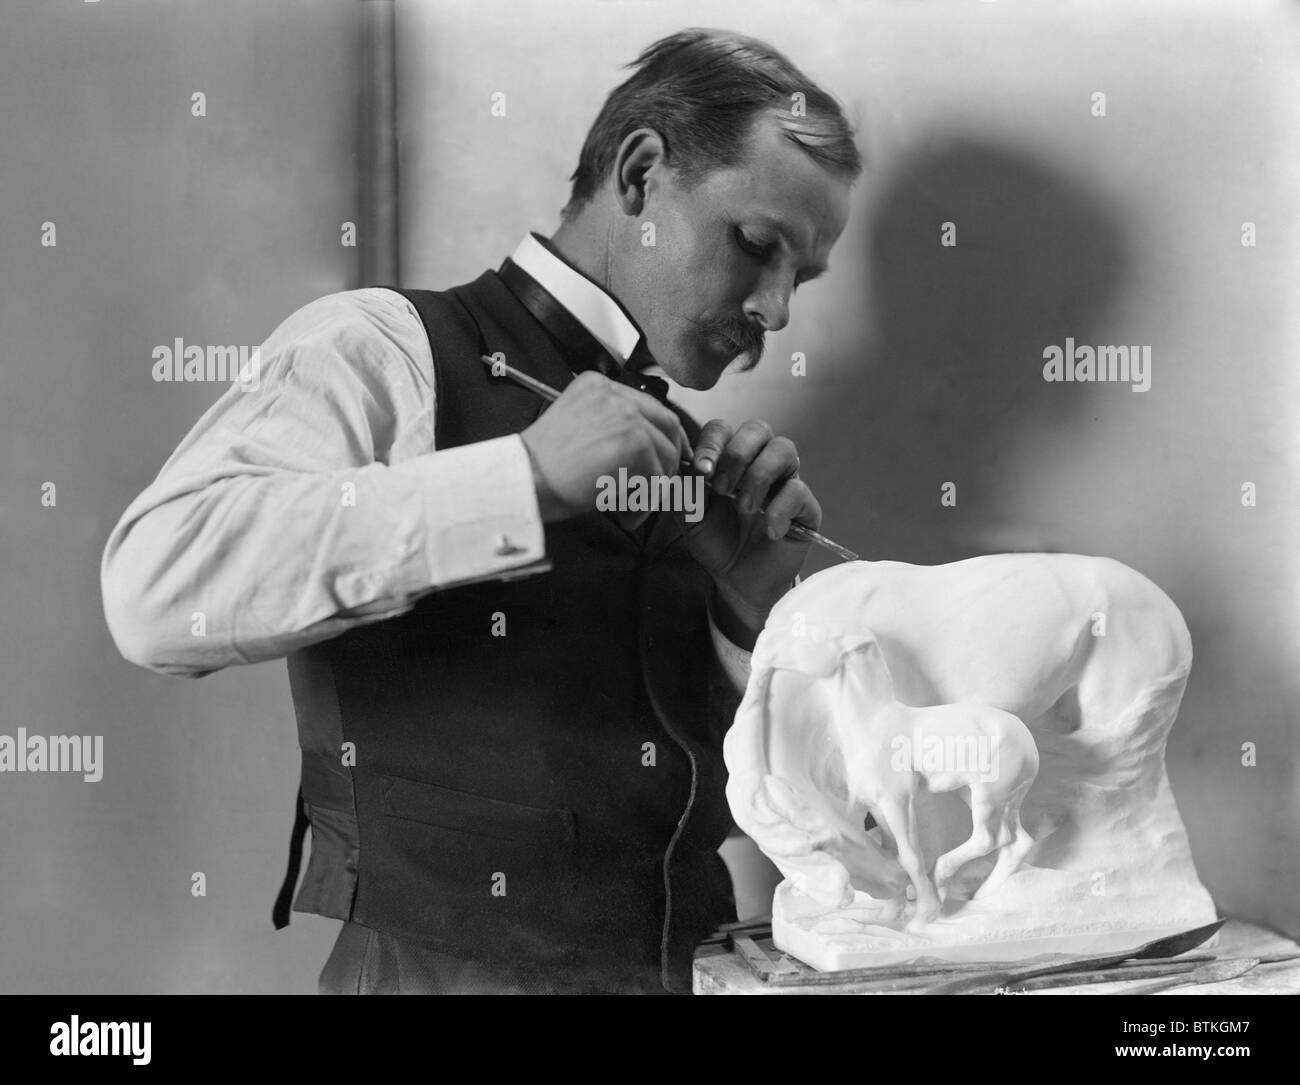 Solon Borglum (1868-1922), sculpteur américain et le frère cadet de Mount Rushmore créateur, Gutzon Borglum. Gertrude Kasebier portrait de 1902. Banque D'Images